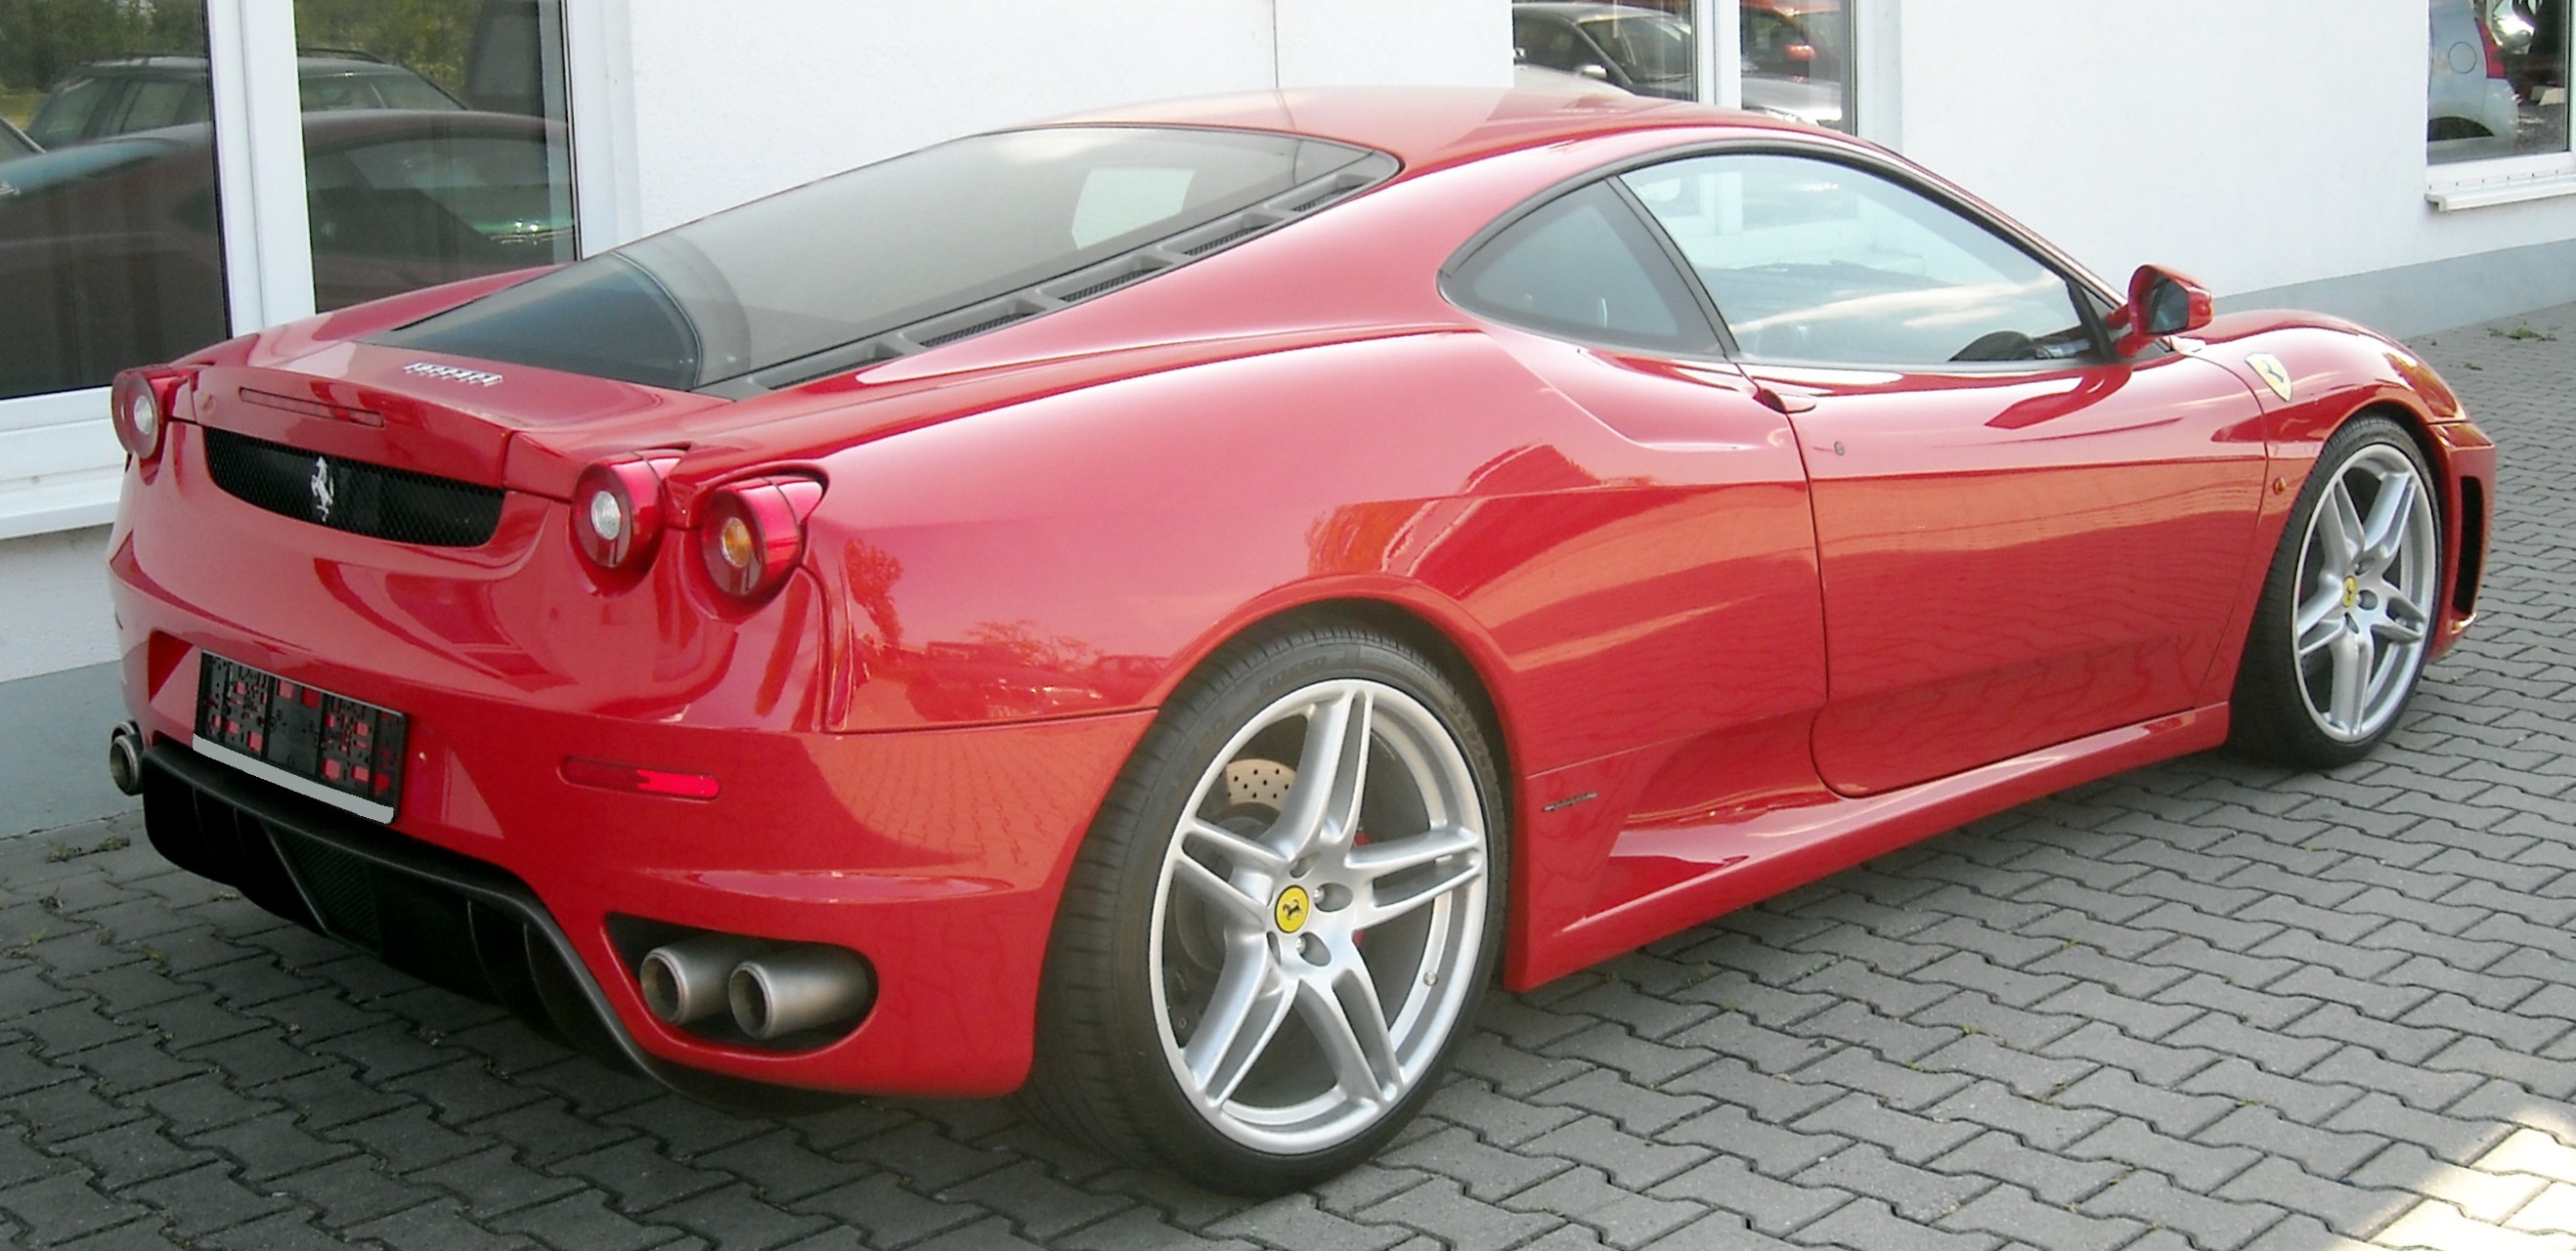 Ferrari_F430_rear_20080605.jpg